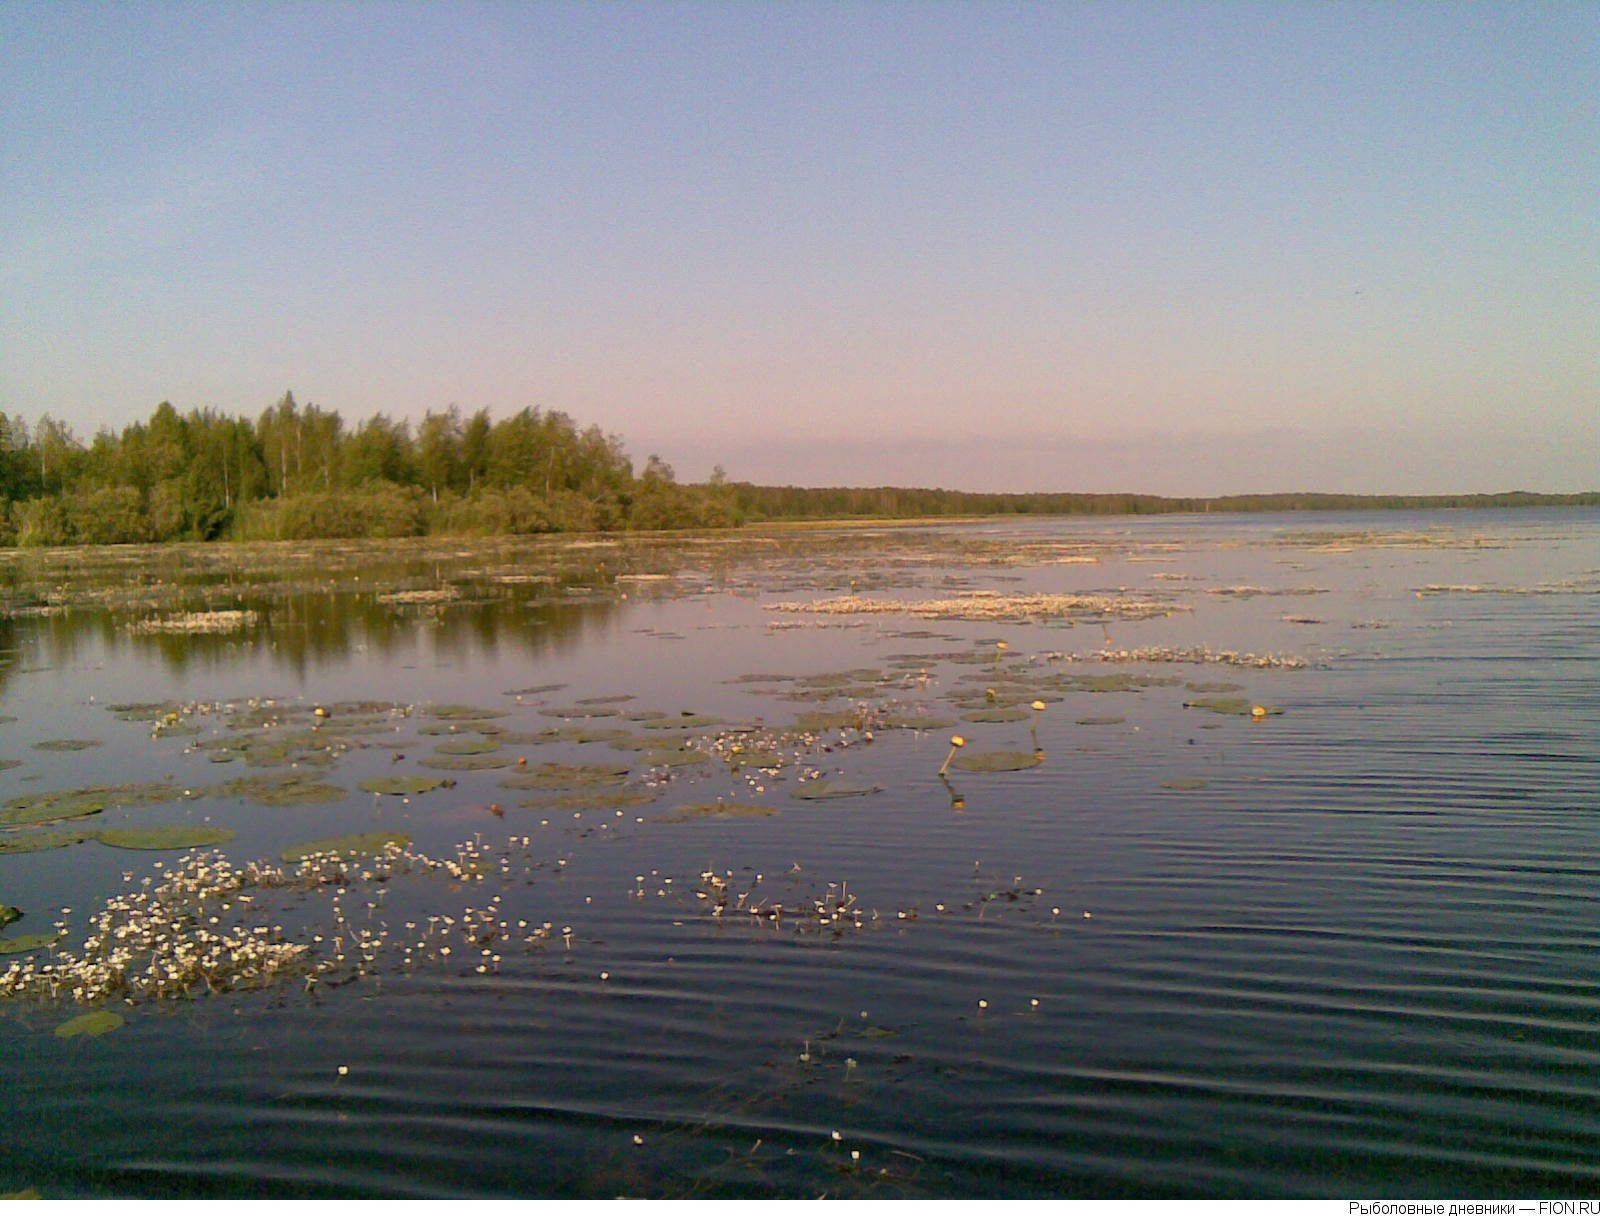 Нестеровское озеро — база отдыха, рыбалка, отзывы, отдых 2020, фото, отели рядом, как доехать на туристер.ру